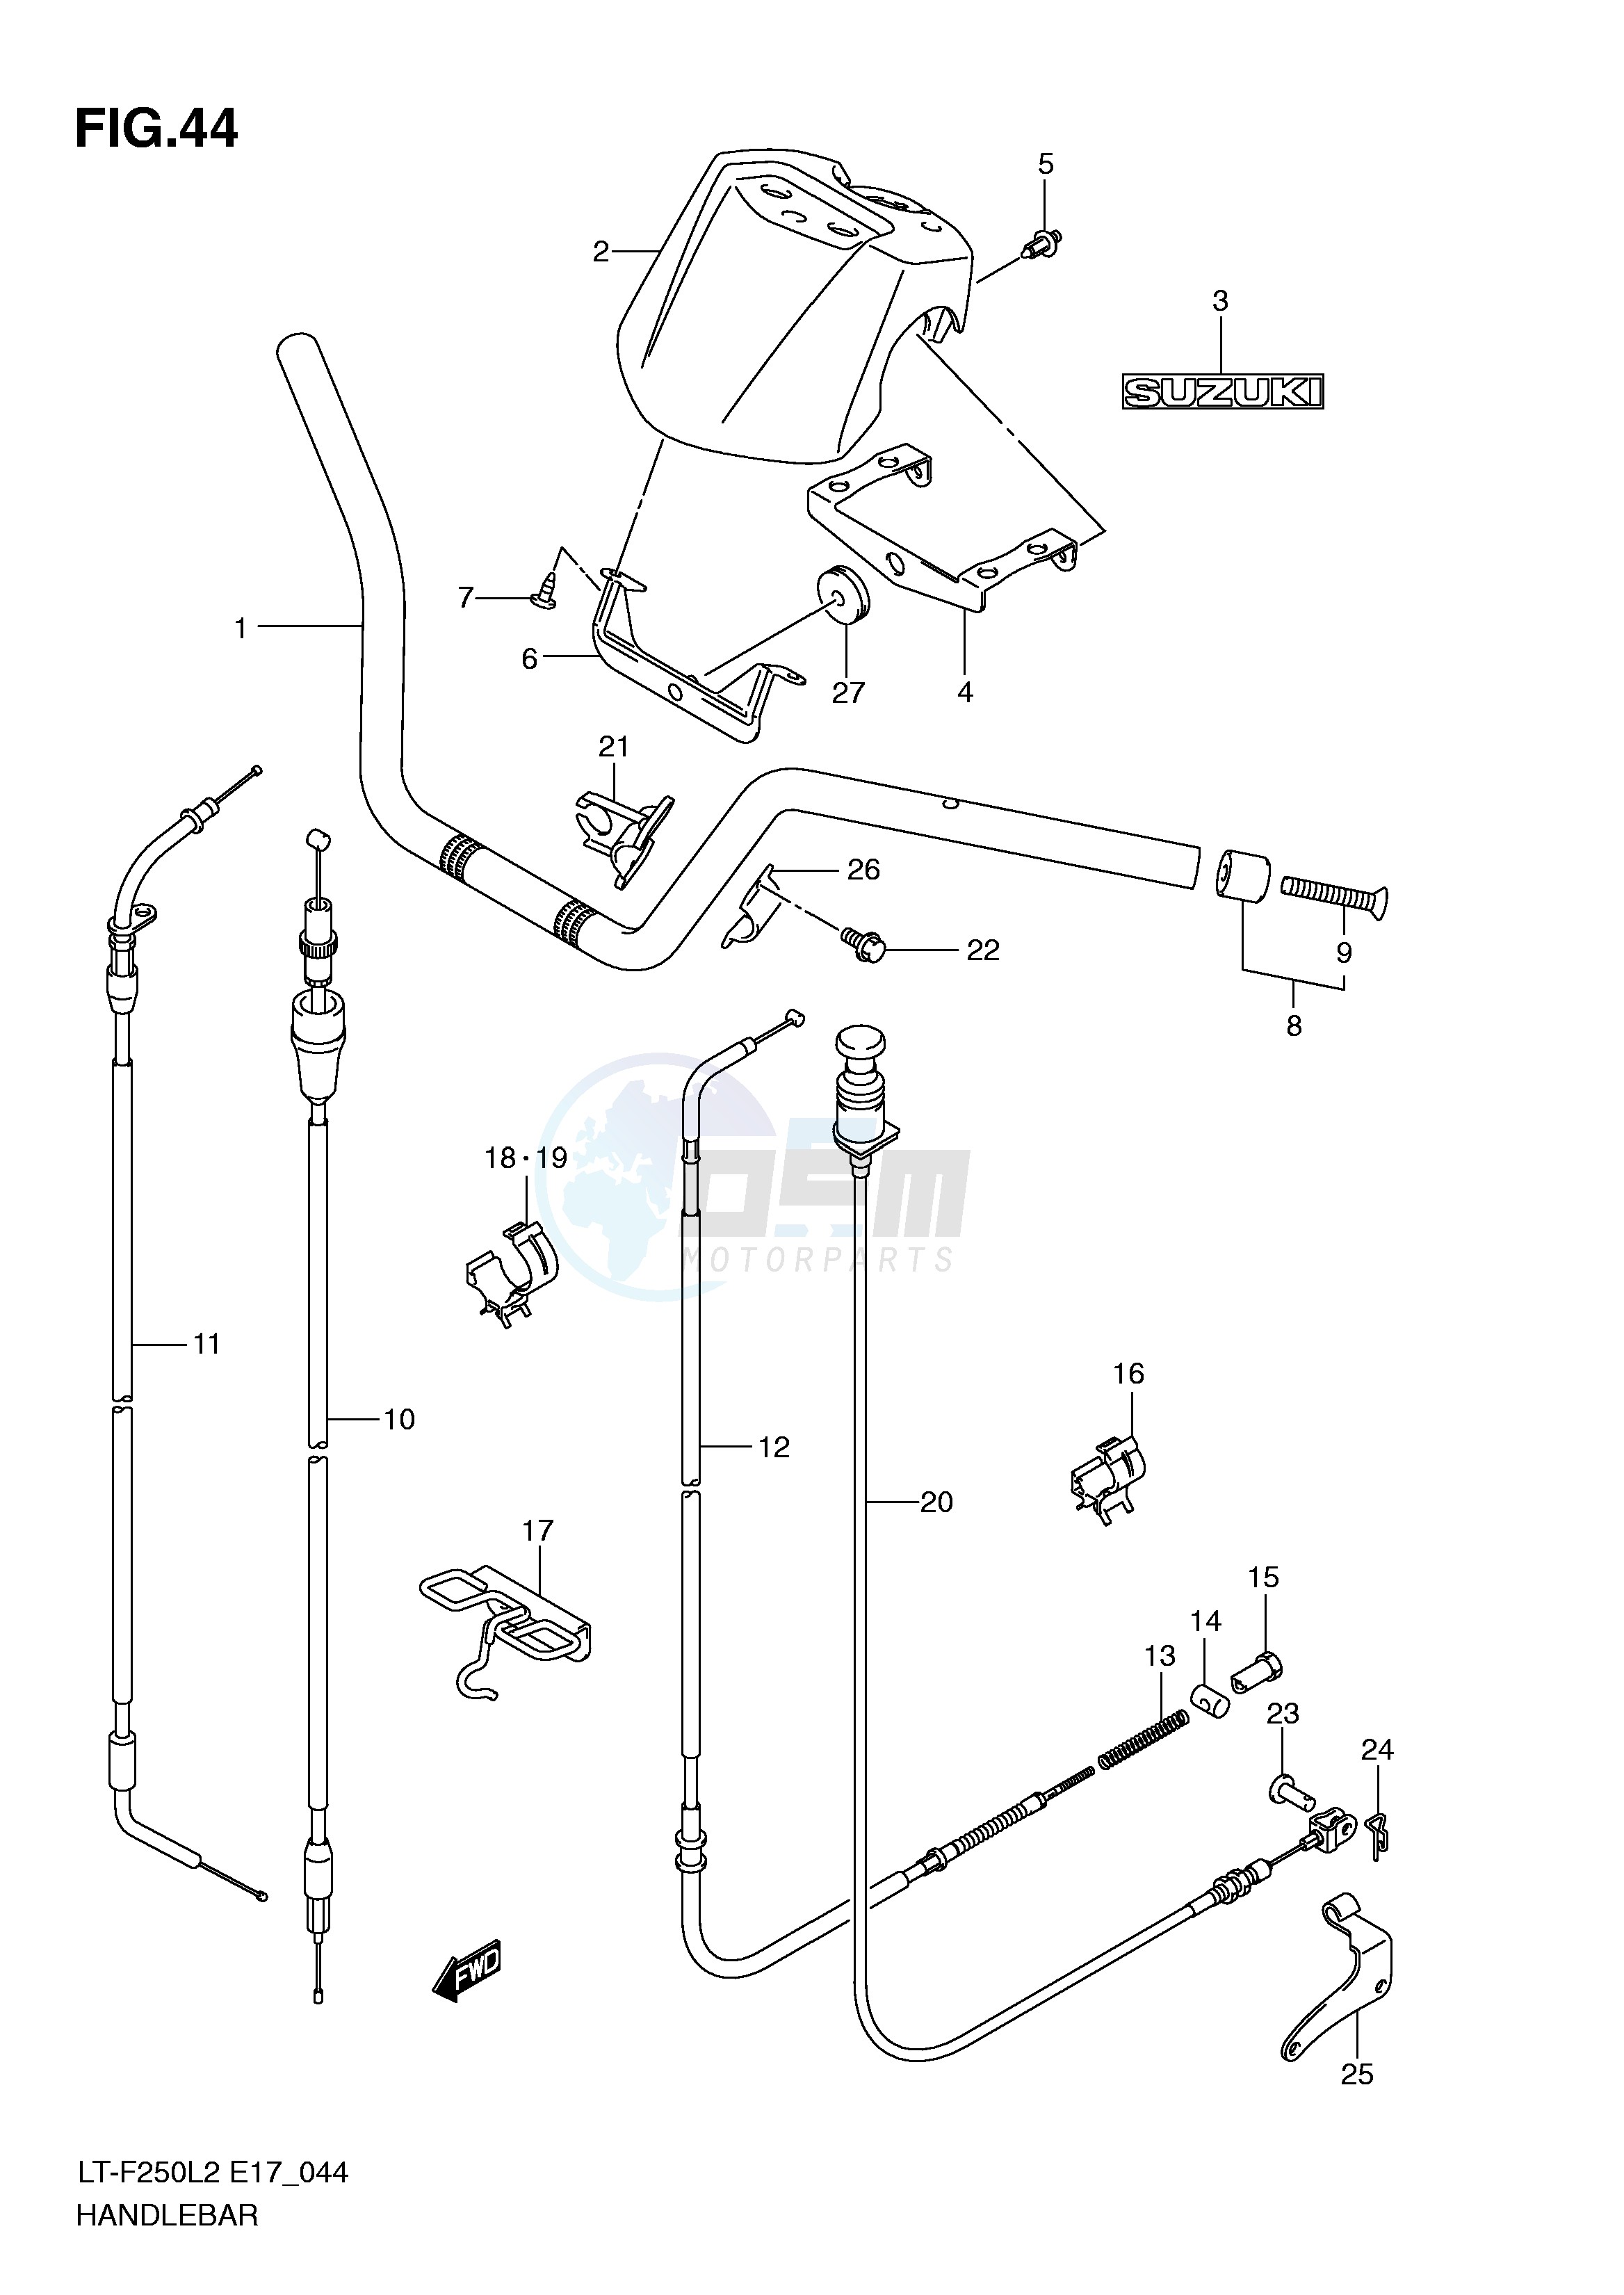 HANDLE BAR (LT-F250L2 E24) blueprint